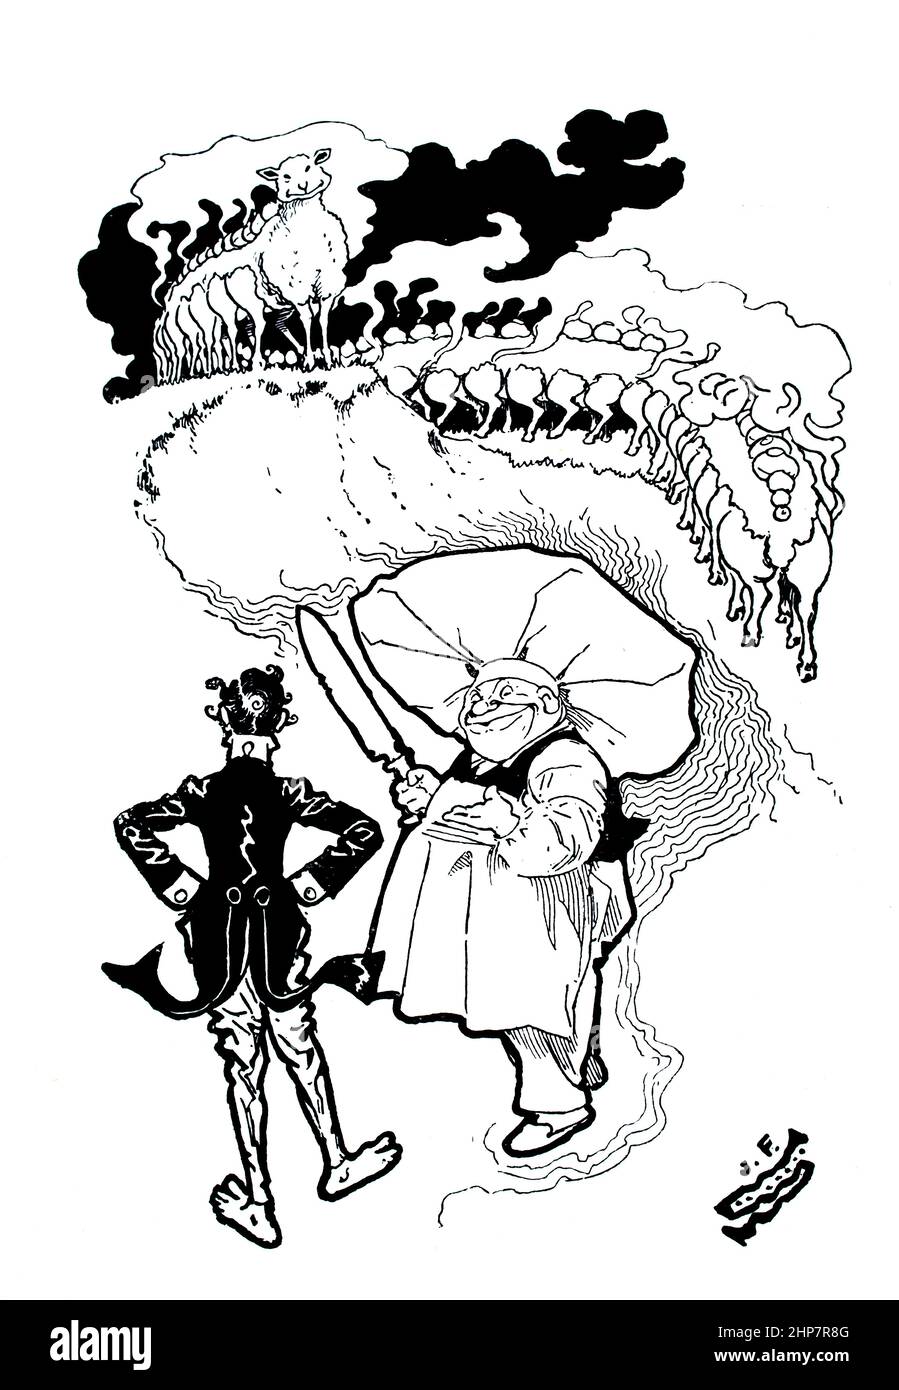 Ill1610 die Flammenblume und andere Geschichten, 1896 Fantasy-Kurzgeschichtenillustration des englischen Karikaturisten und Schriftstellers James F. Sullivan Stockfoto